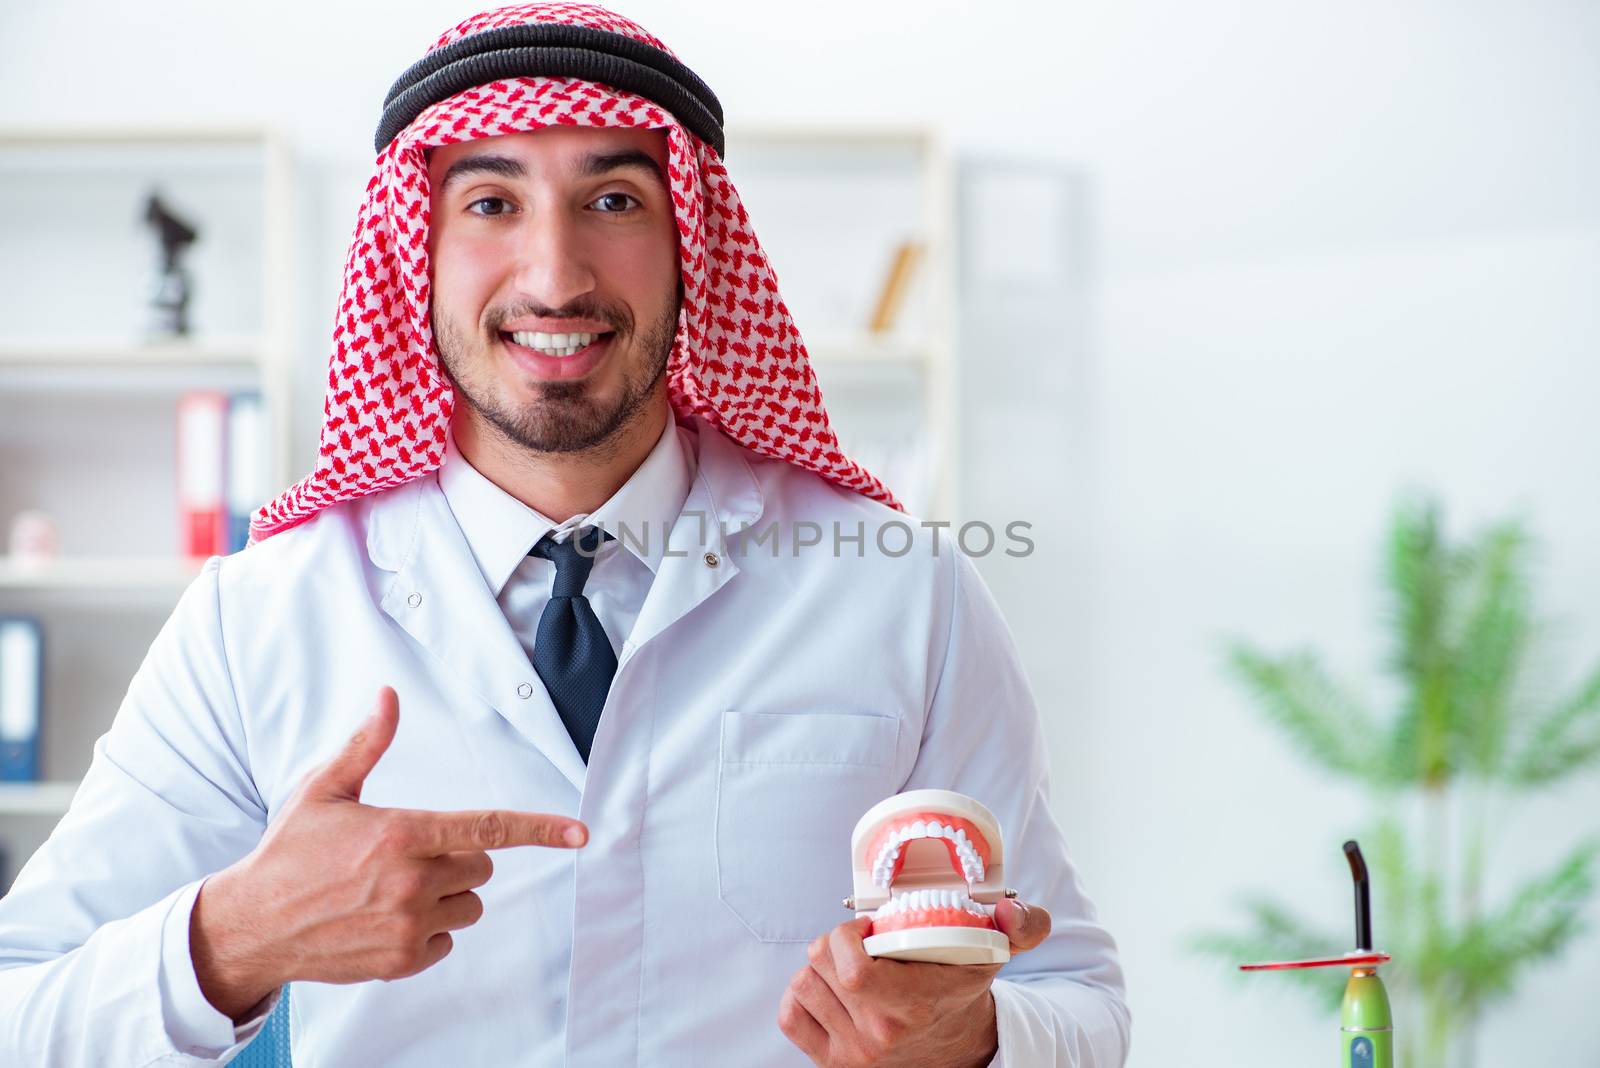 Arab dentist working on new teeth implant by Elnur